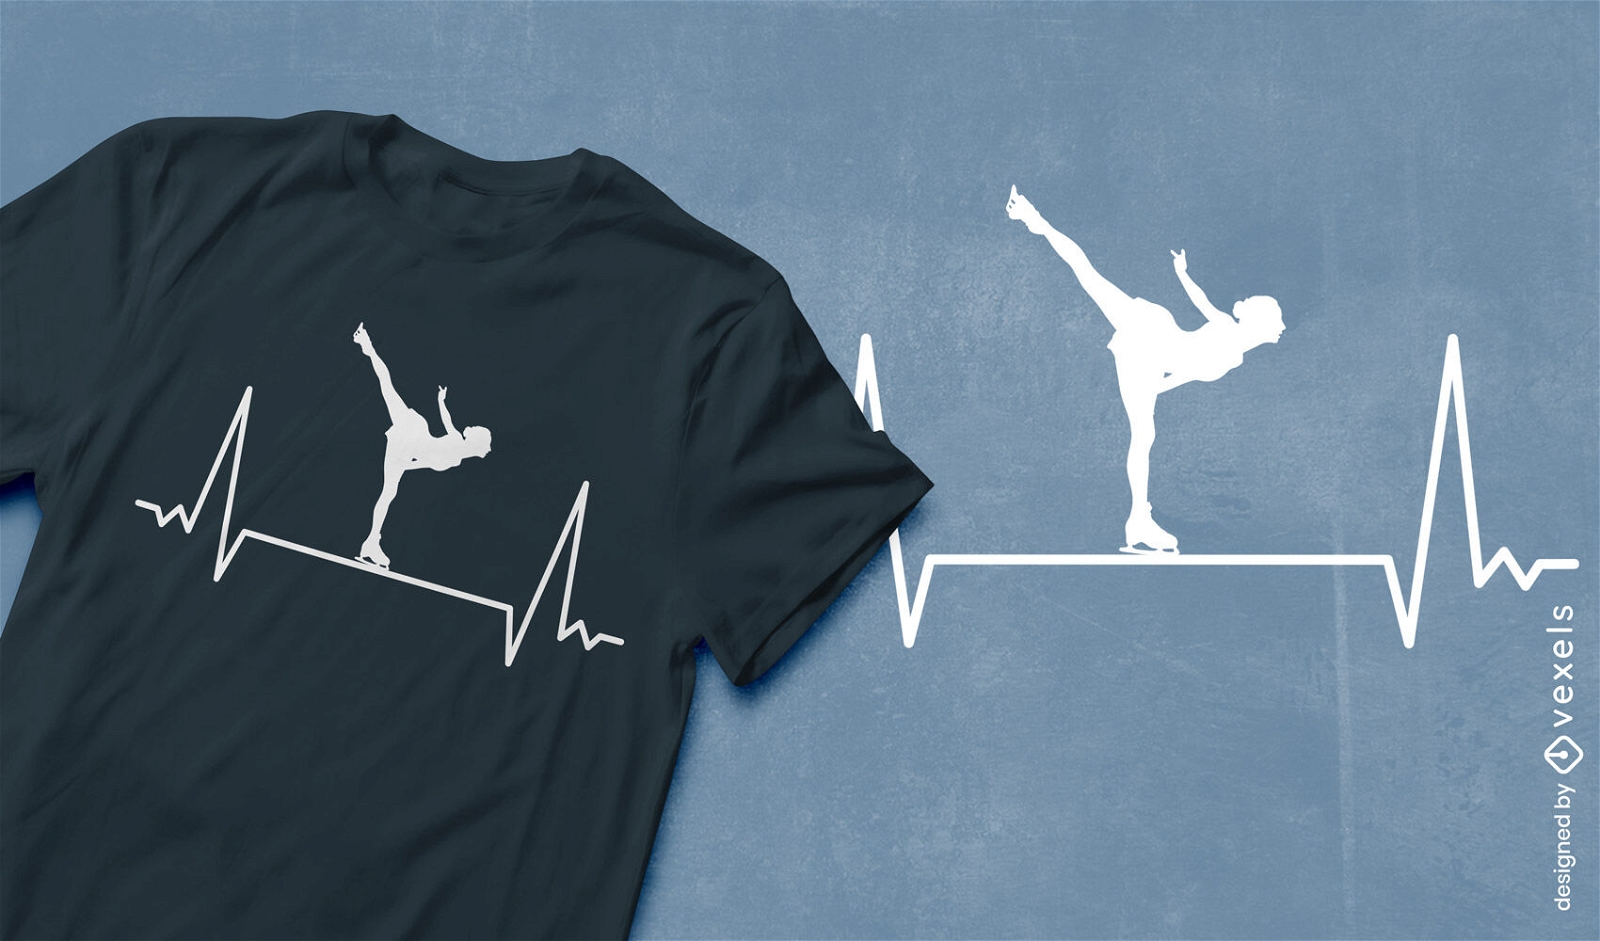 Heartbeat line figure skater t-shirt design